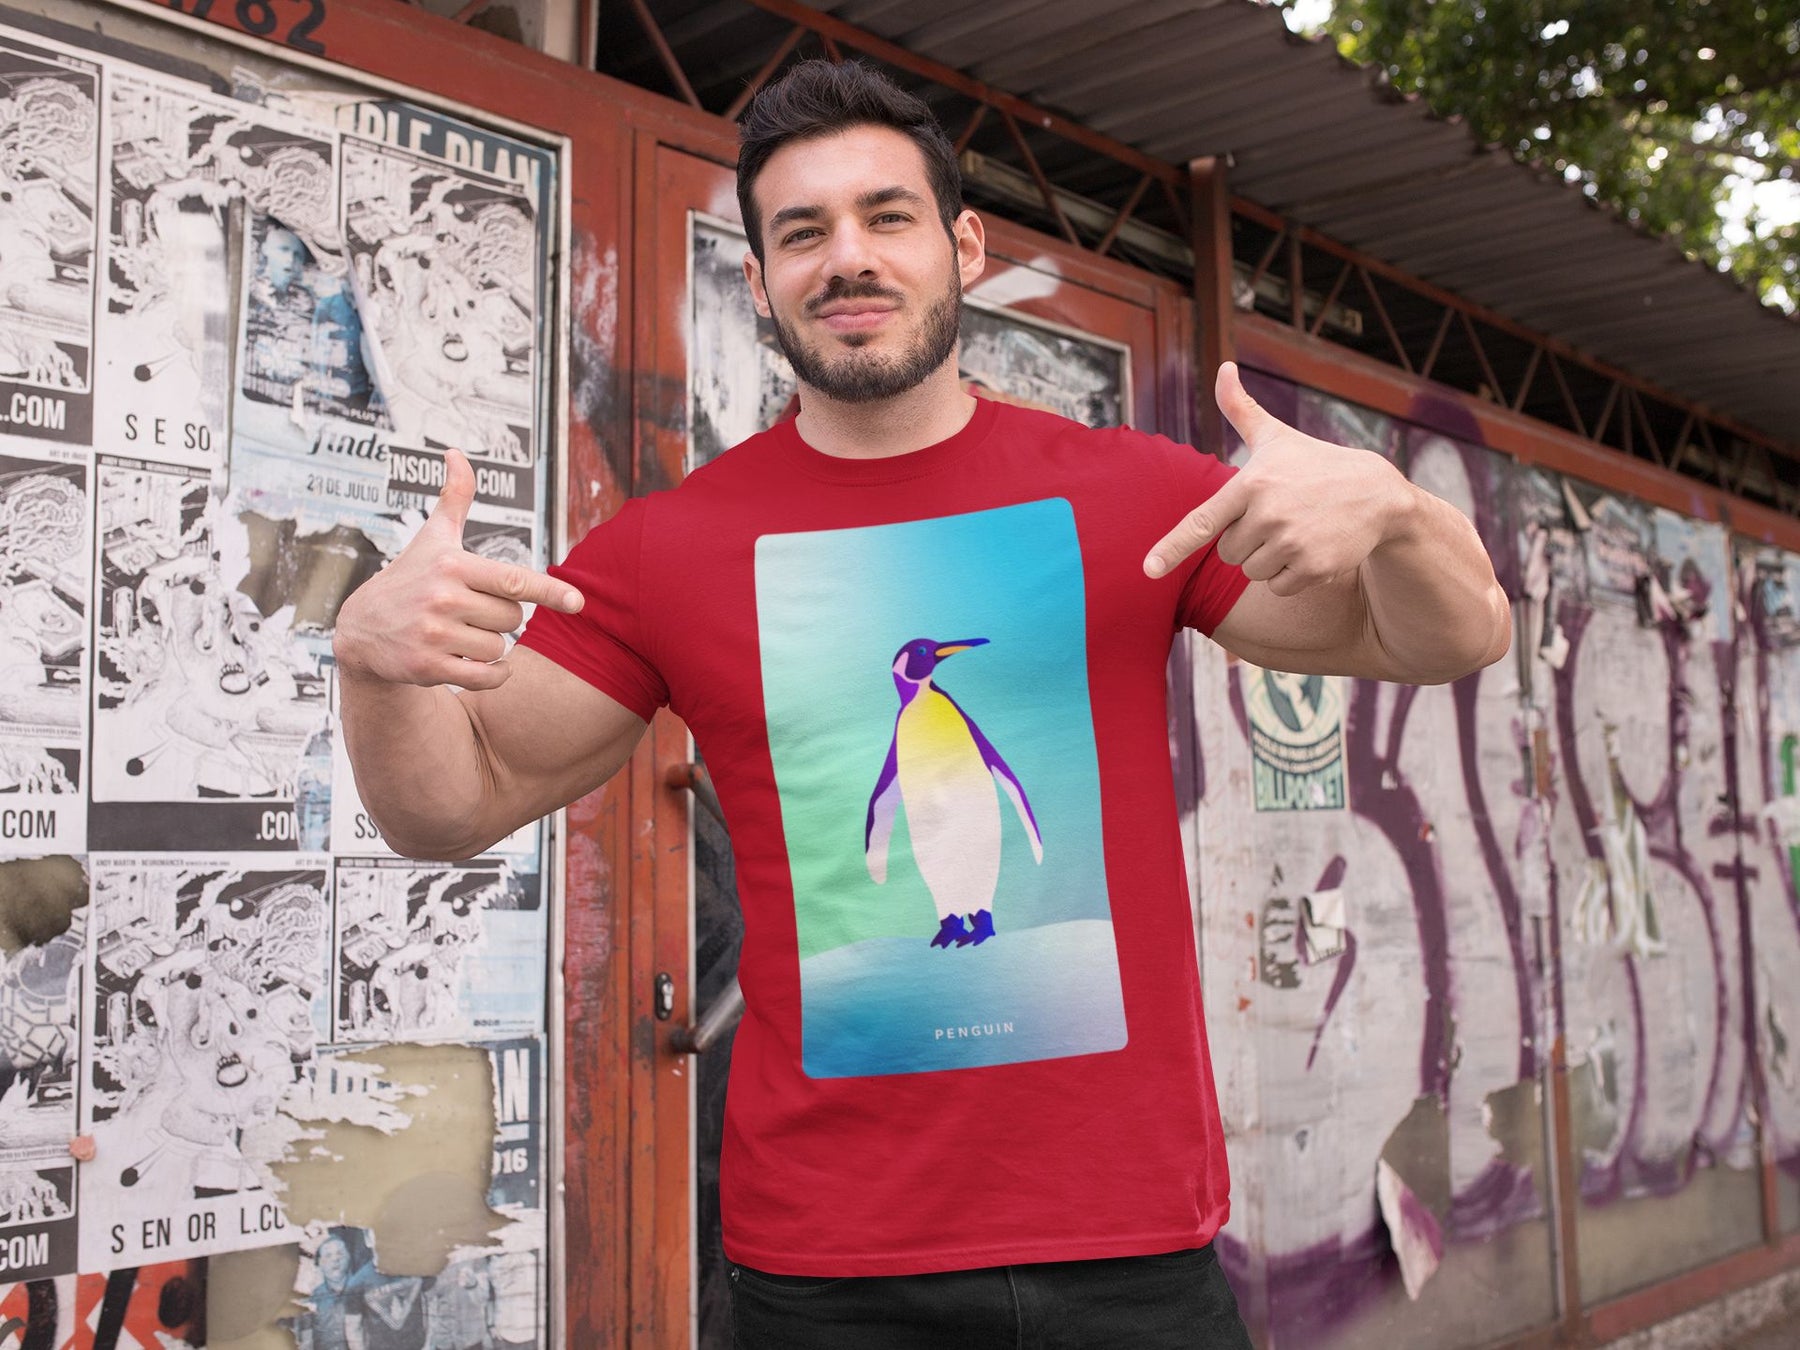 Penguin T-shirt